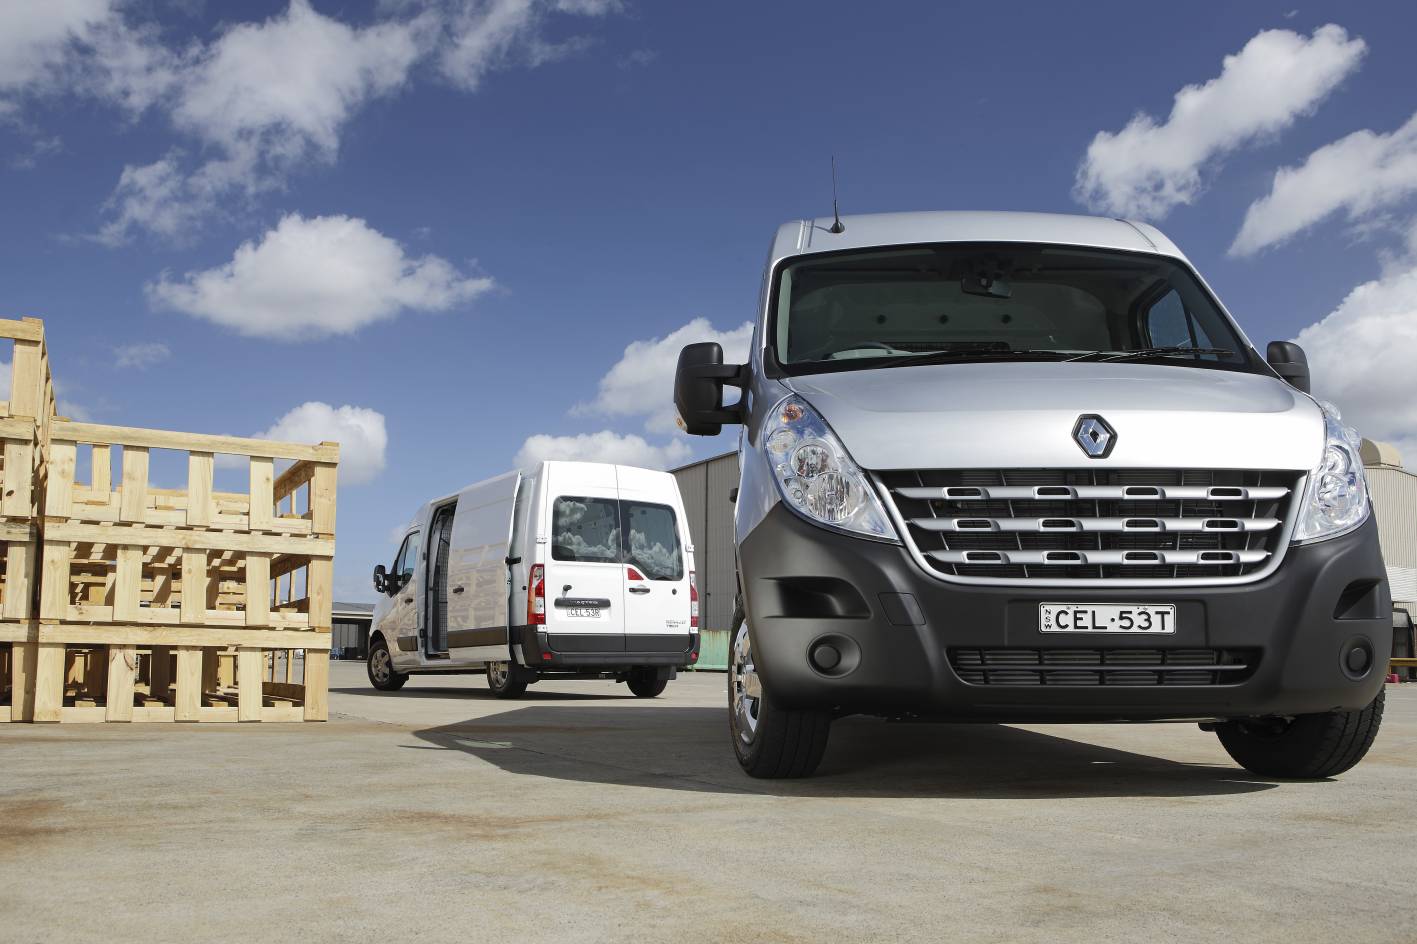 Inwoner Vergoeding Vermaken Auspost picks Renault vans - Drive